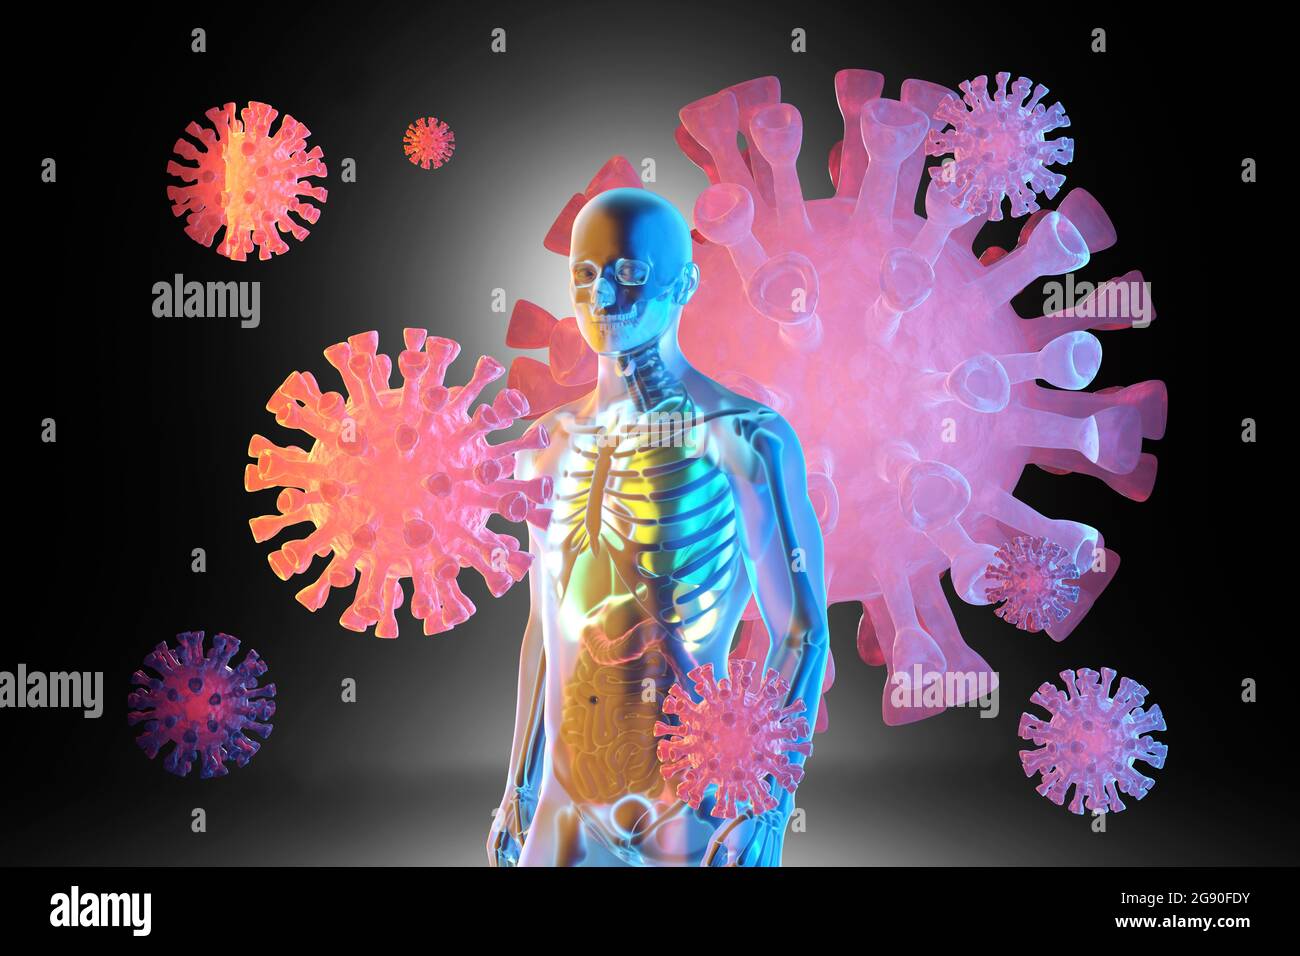 Dreidimensionale Darstellung riesiger Viruszellen, die um das anatomische Modell des Menschen mit transparenter Haut schweben Stockfoto